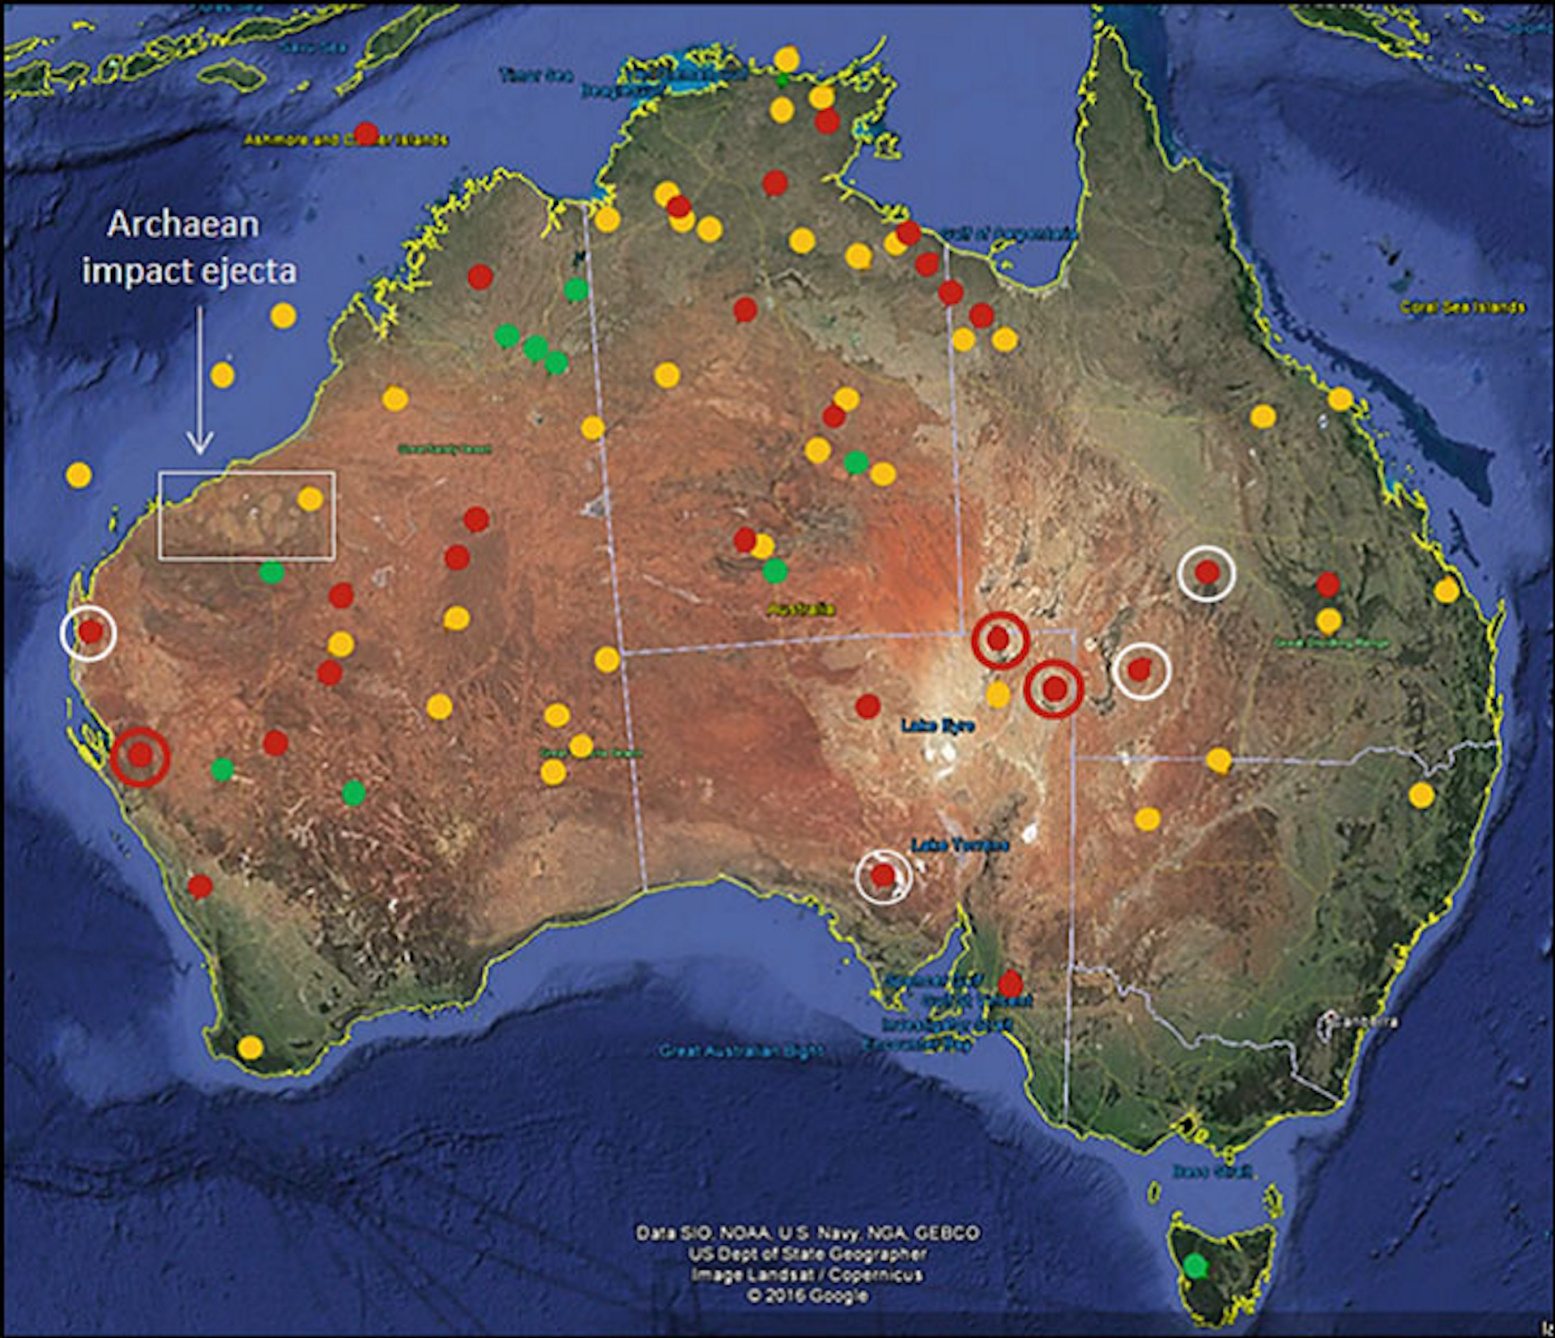 Tato mapa ukazuje rozložení kruhových struktur nejistého, možného nebo pravděpodobného původu dopadu na australském kontinentu a na moři. Zelené tečky představují potvrzené impaktní krátery. Červené tečky představují potvrzené dopadové struktury, které jsou více než 100 km široké, zatímco červené tečky uvnitř bílých kruhů jsou široké více než 50 km. Žluté tečky představují pravděpodobné struktury dopadu.